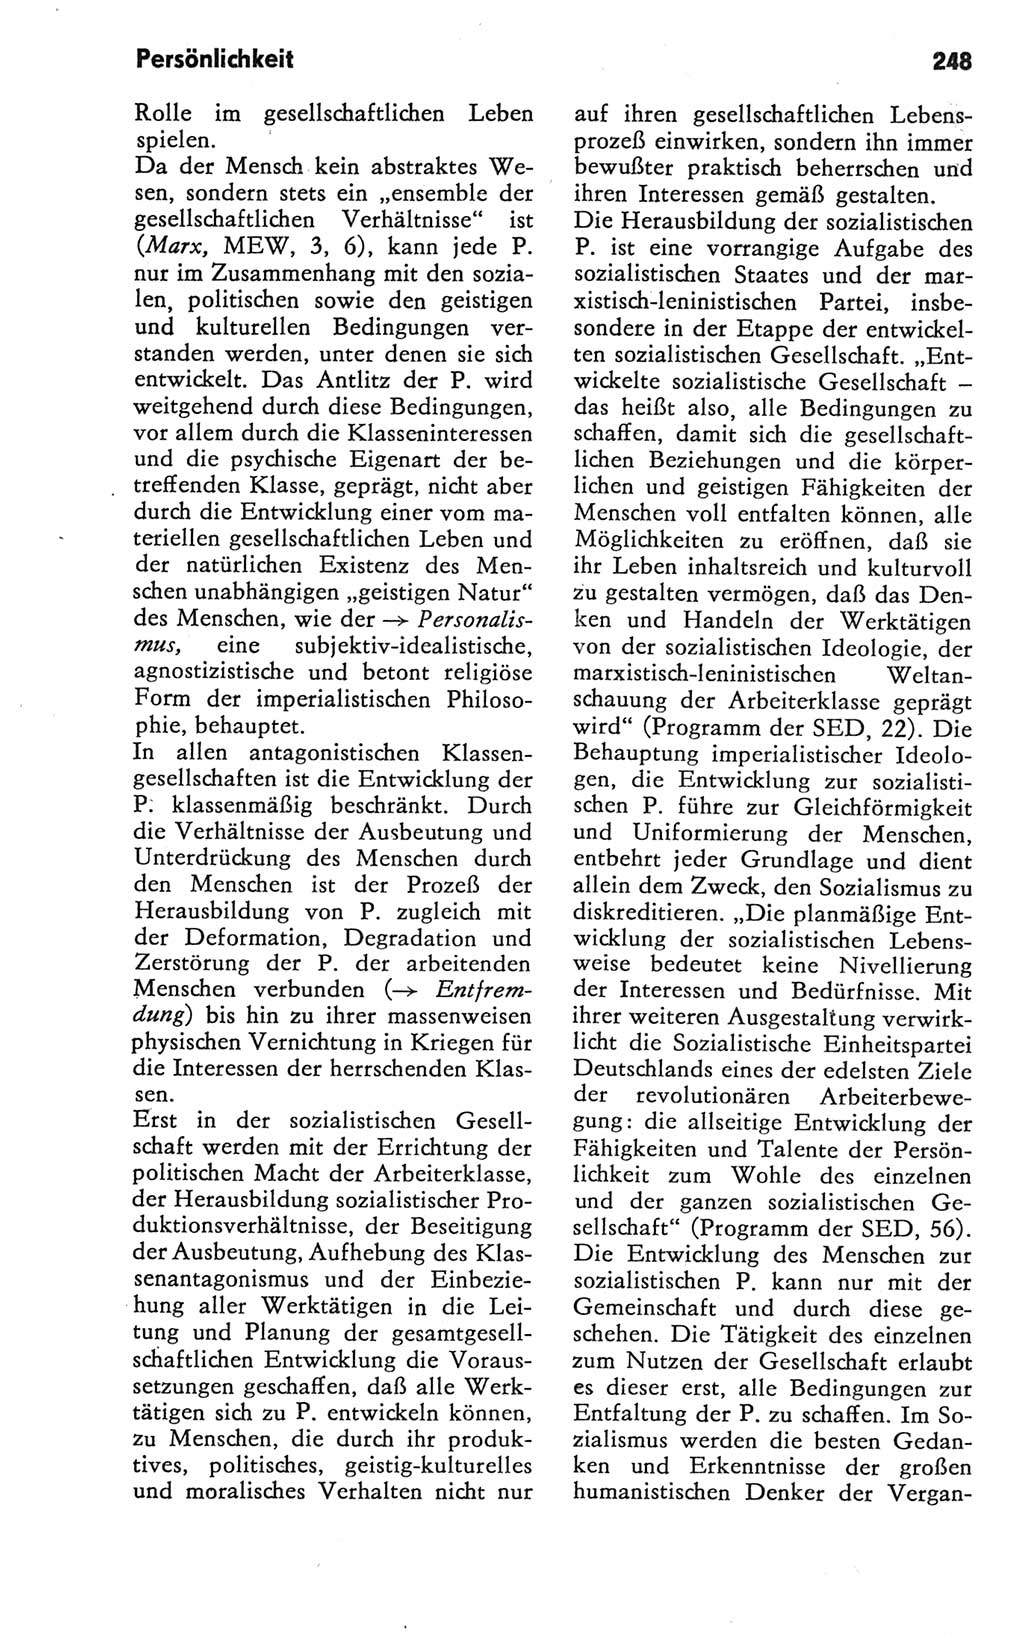 Kleines Wörterbuch der marxistisch-leninistischen Philosophie [Deutsche Demokratische Republik (DDR)] 1981, Seite 248 (Kl. Wb. ML Phil. DDR 1981, S. 248)